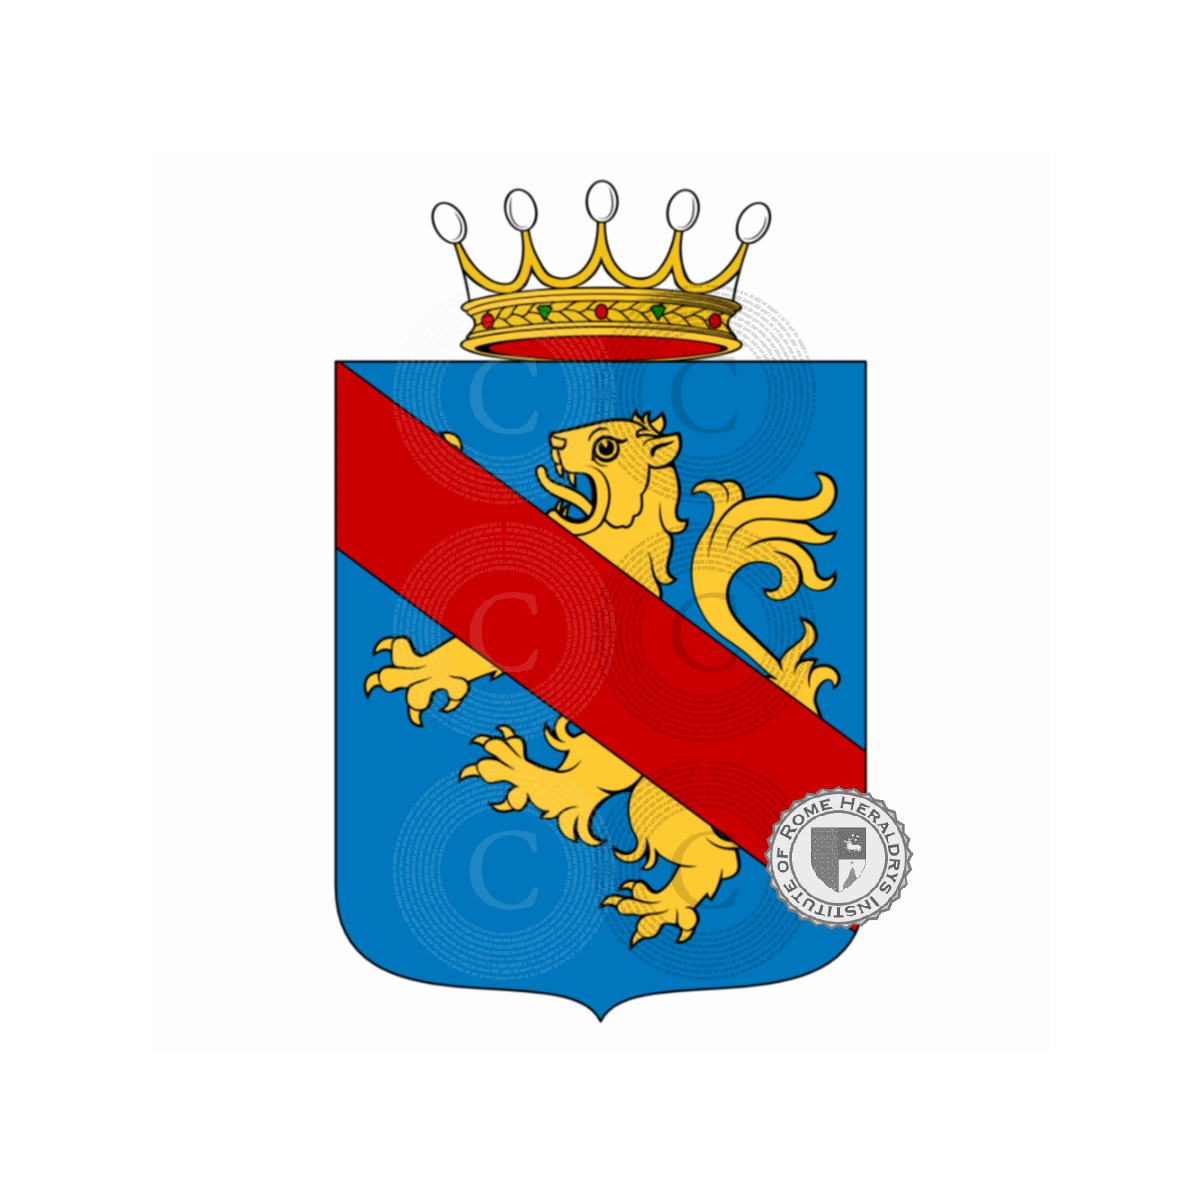 Coat of arms of familyMartini, de Martini,Martinicchio